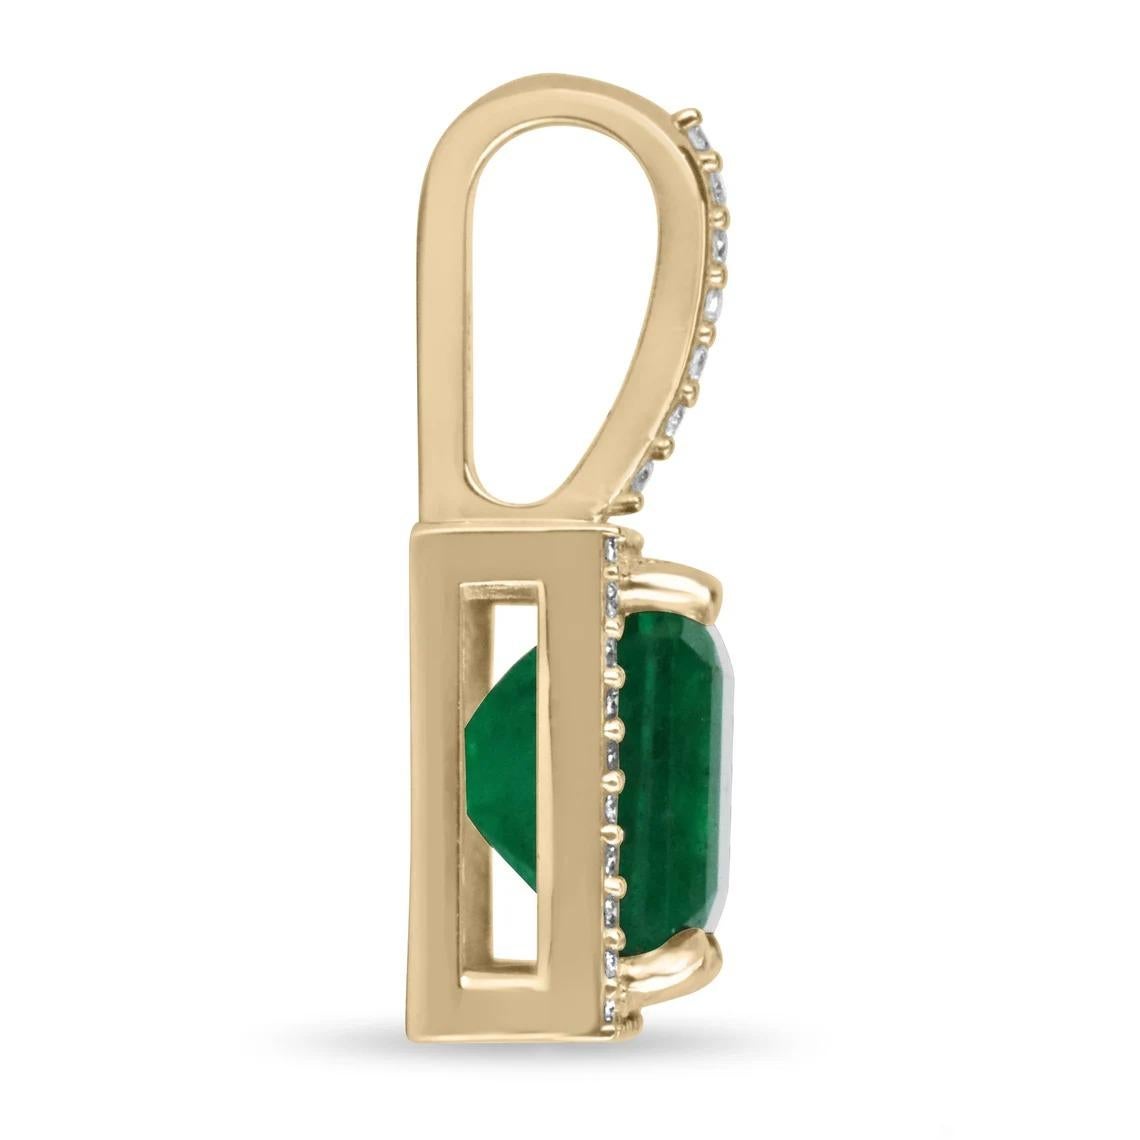 Ausgestellt ist eine atemberaubende Asscher cut Smaragd und Diamant Halo Halskette in 14K Gold. Der Anhänger ist mit einem tiefgrünen Smaragd im Asscher-Schliff verziert. Der Smaragd ist von zahlreichen natürlichen, runden, weißen Brillanten